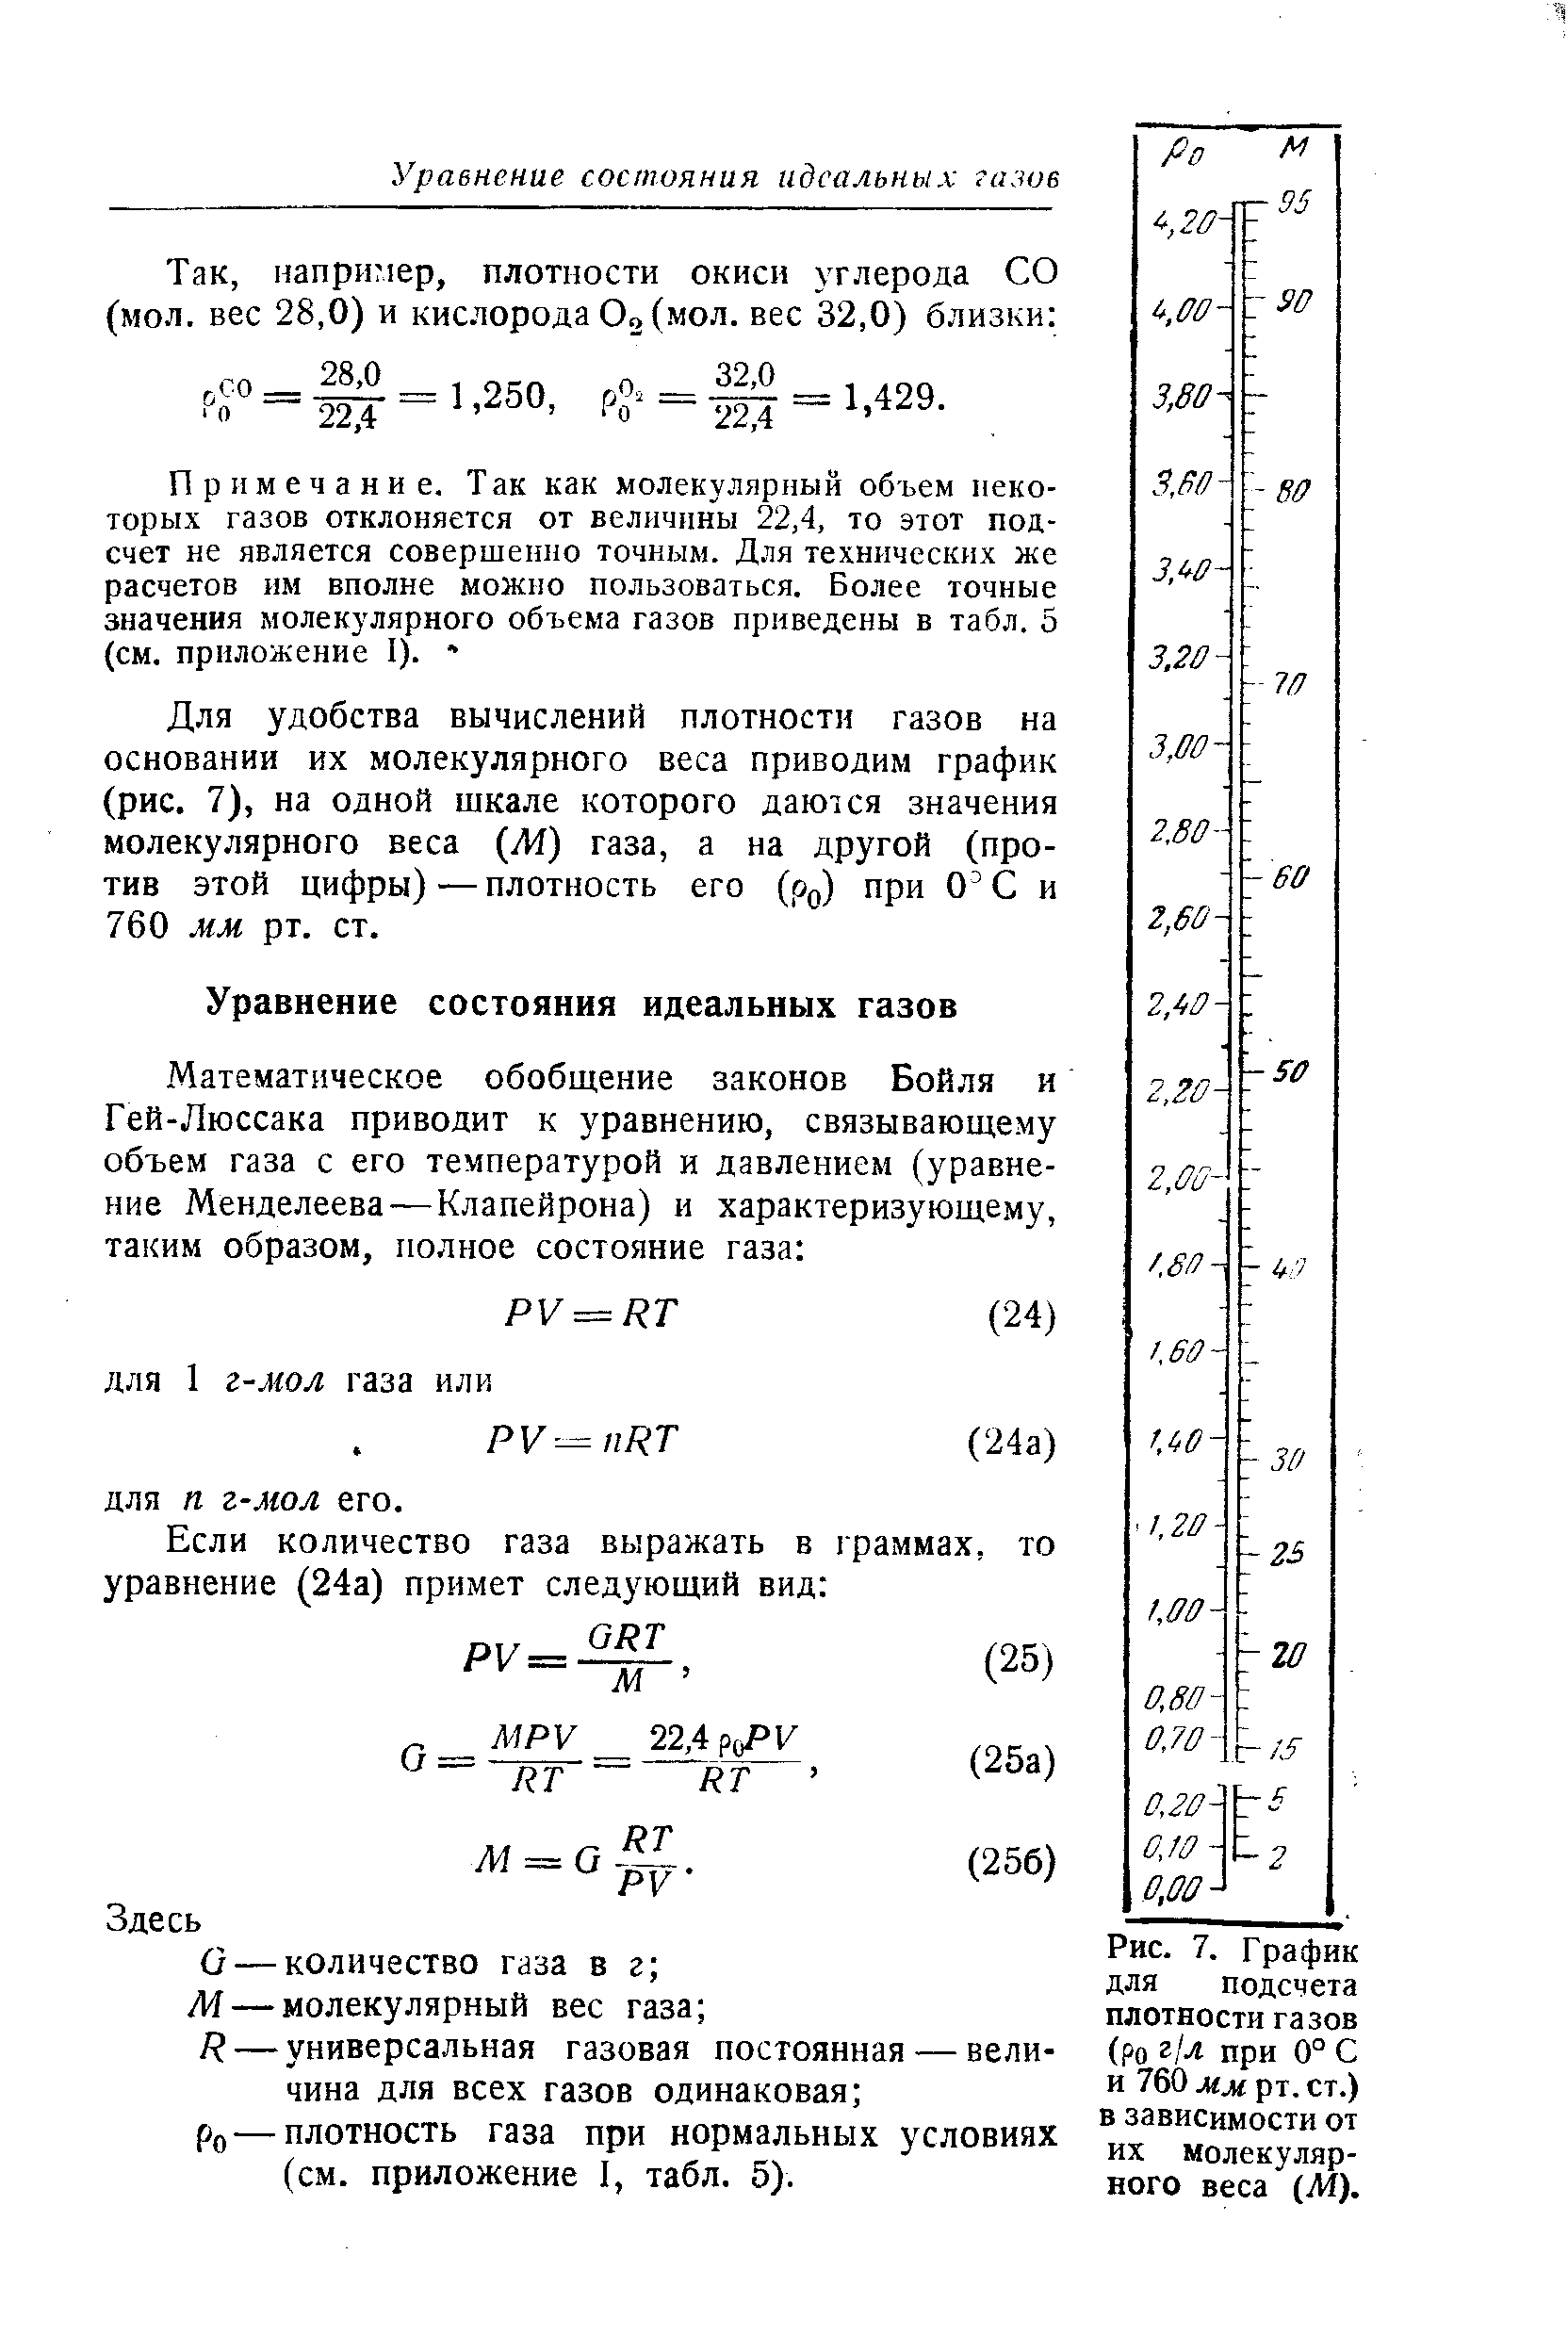 Ро — плотность газа при нормальных условиях (см. приложение 1, табл. 5).